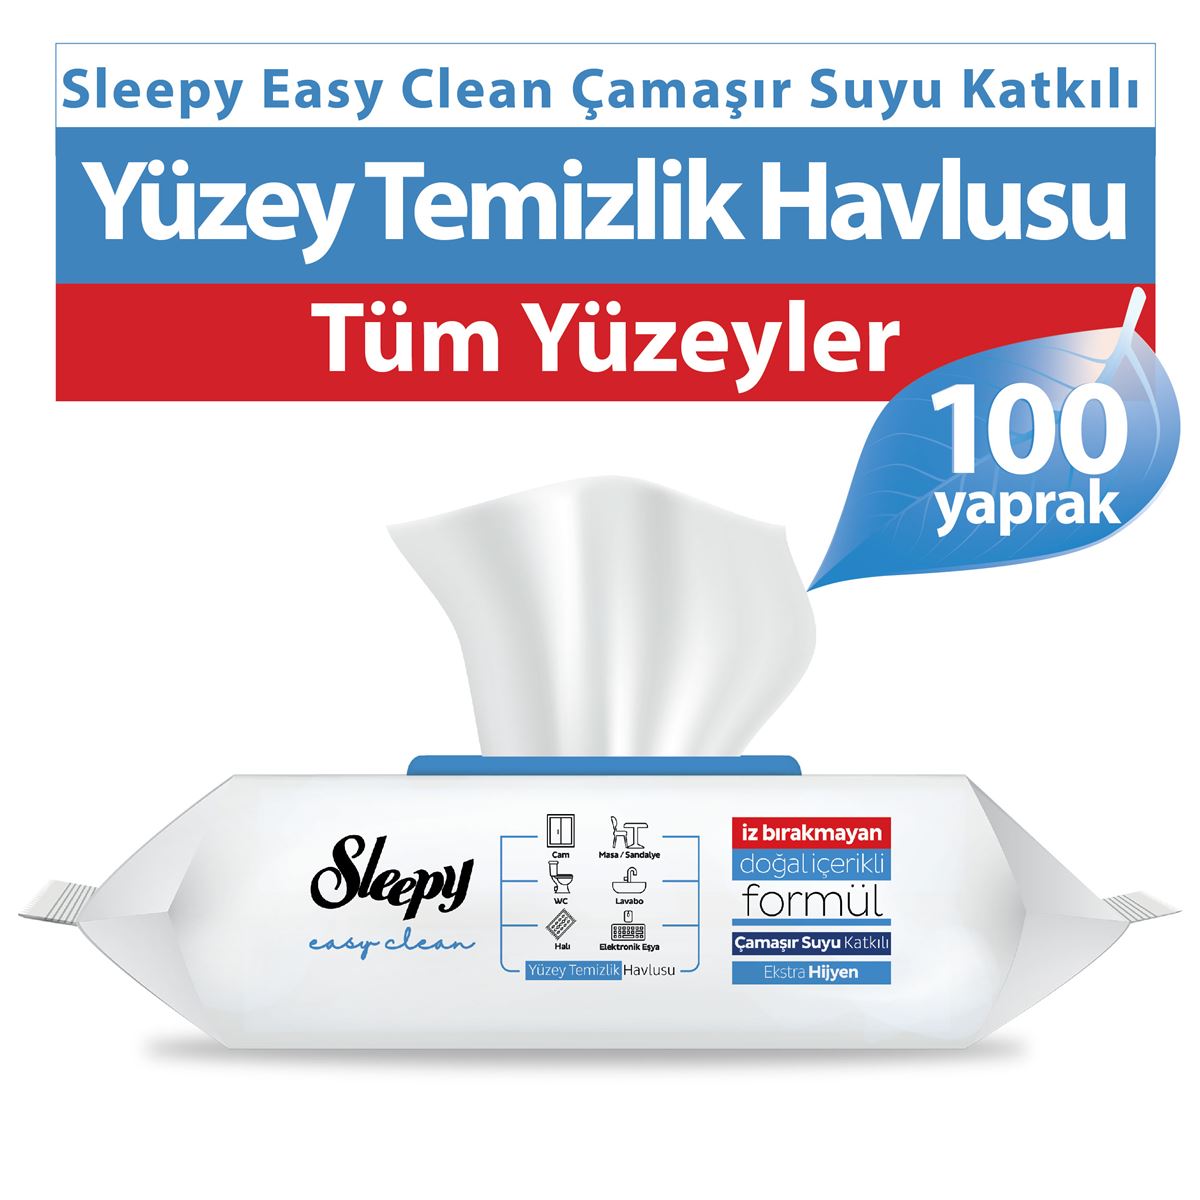 Sleepy Easy Clean Çamaşır Suyu Katkılı Yüzey Temizlik Havlusu 100 Yaprak 6 Paket